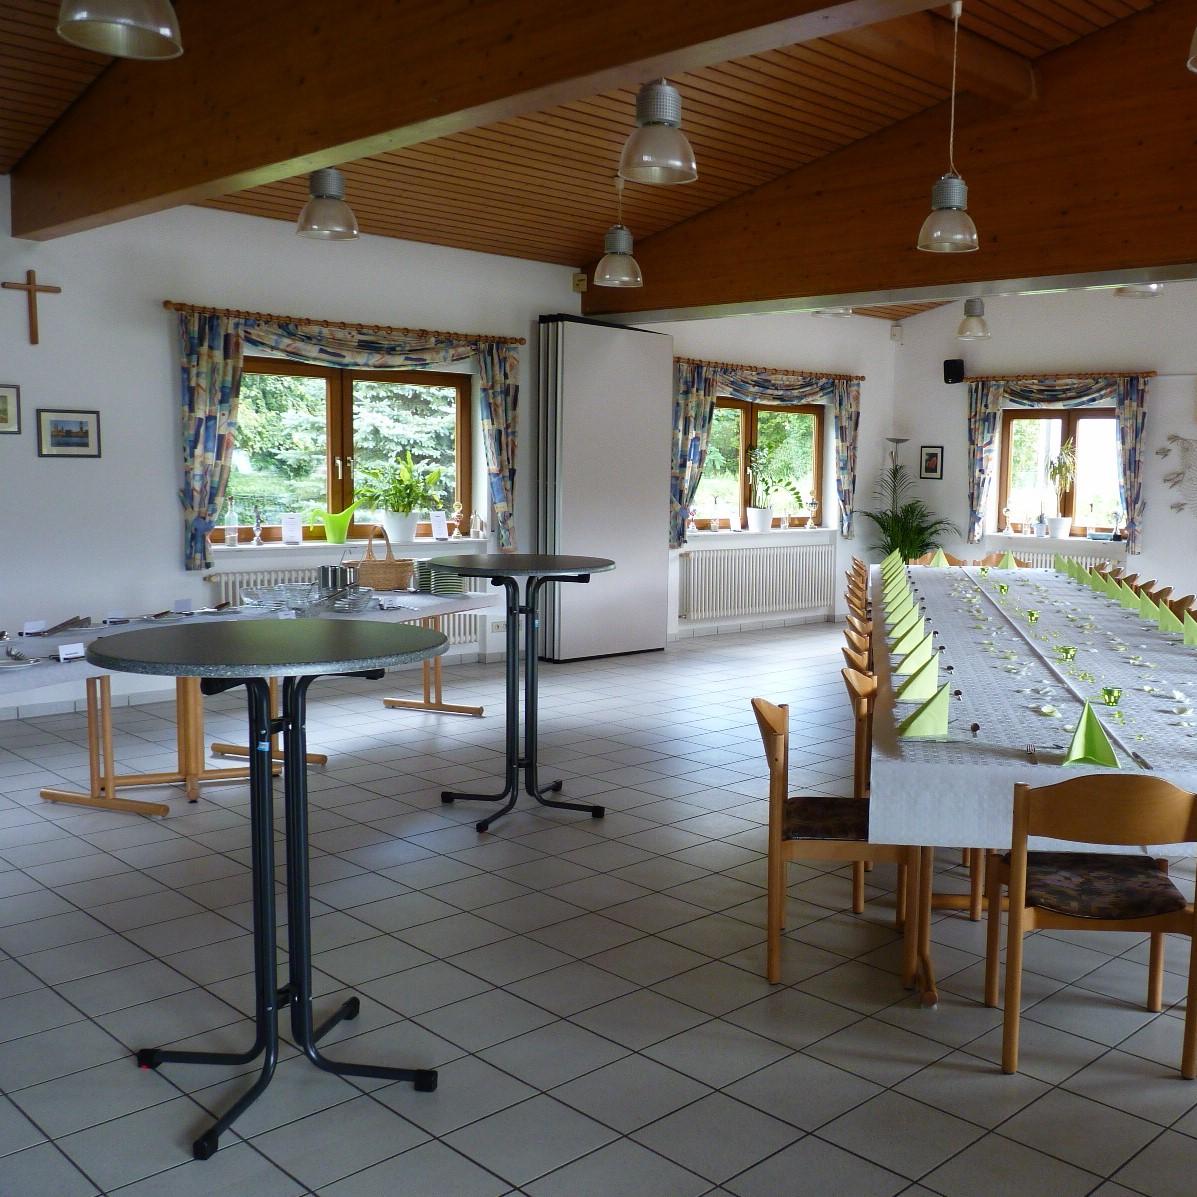 Restaurant "Fischerheim ASV Illingen" in Elchesheim-Illingen